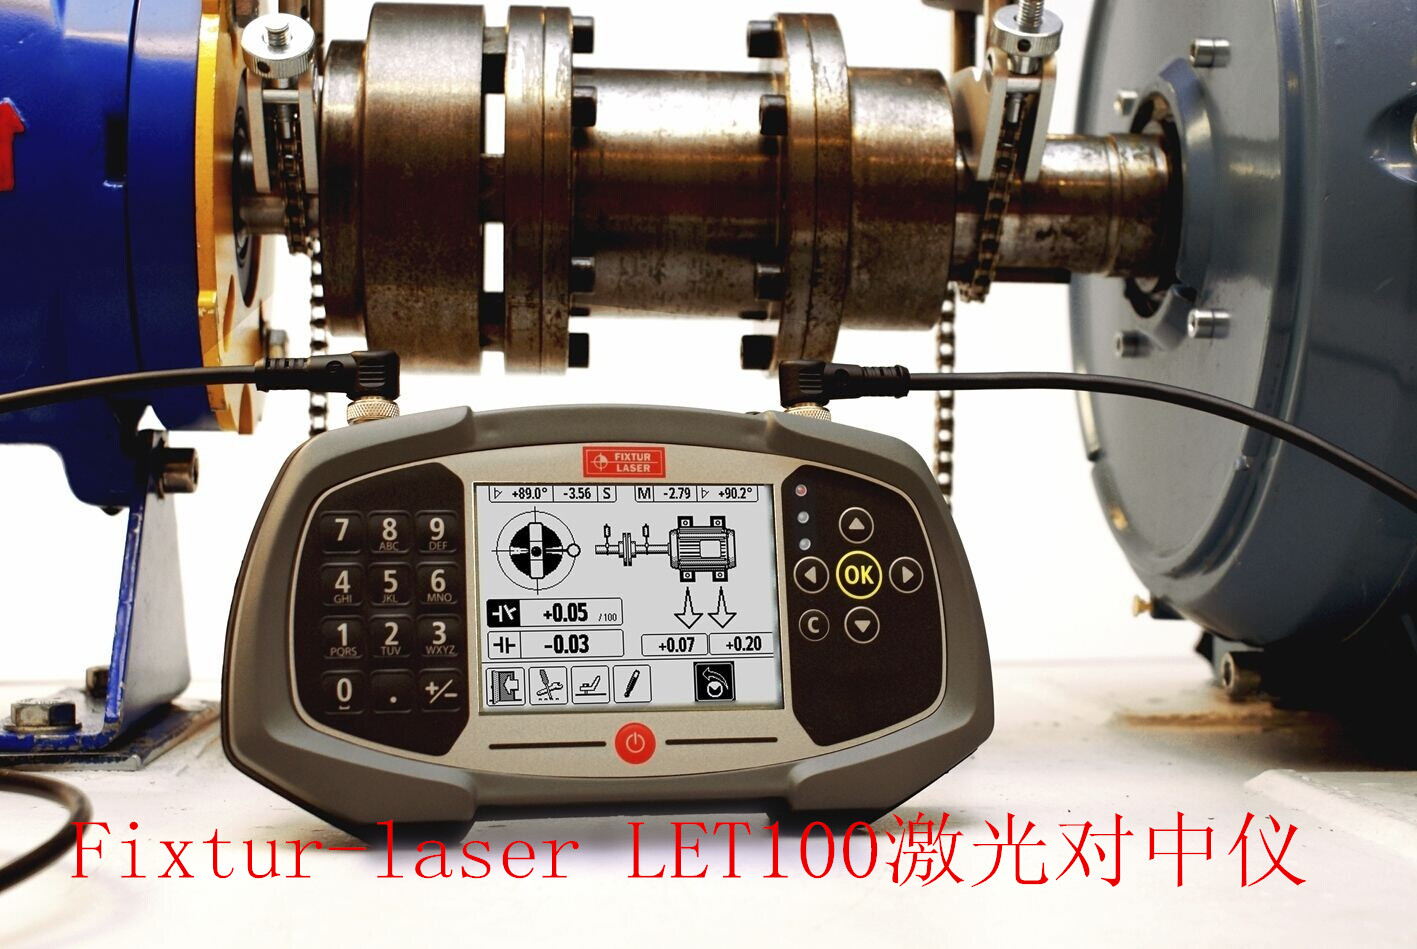 瑞典Fixtur-laser LET100激光对中仪--中国区域总代理商